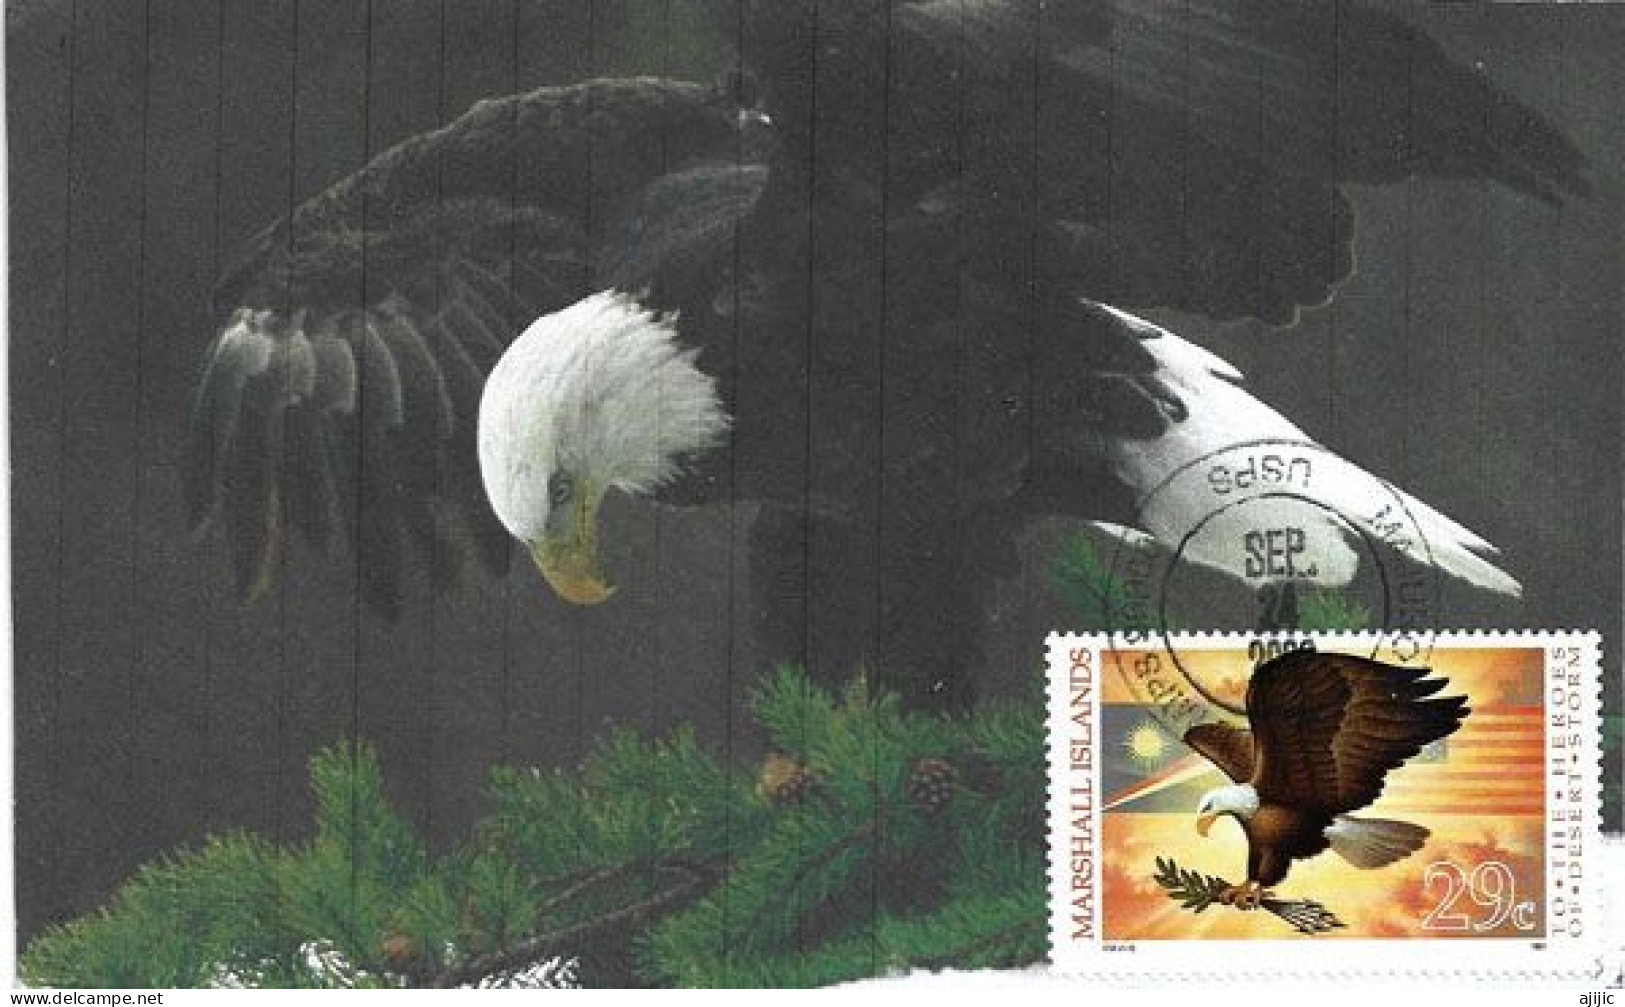 MARSHALL ISLAND: American Eagle (Bald Eagle)   MAXI-CARD From Majuro Marshall Islands - Islas Marshall